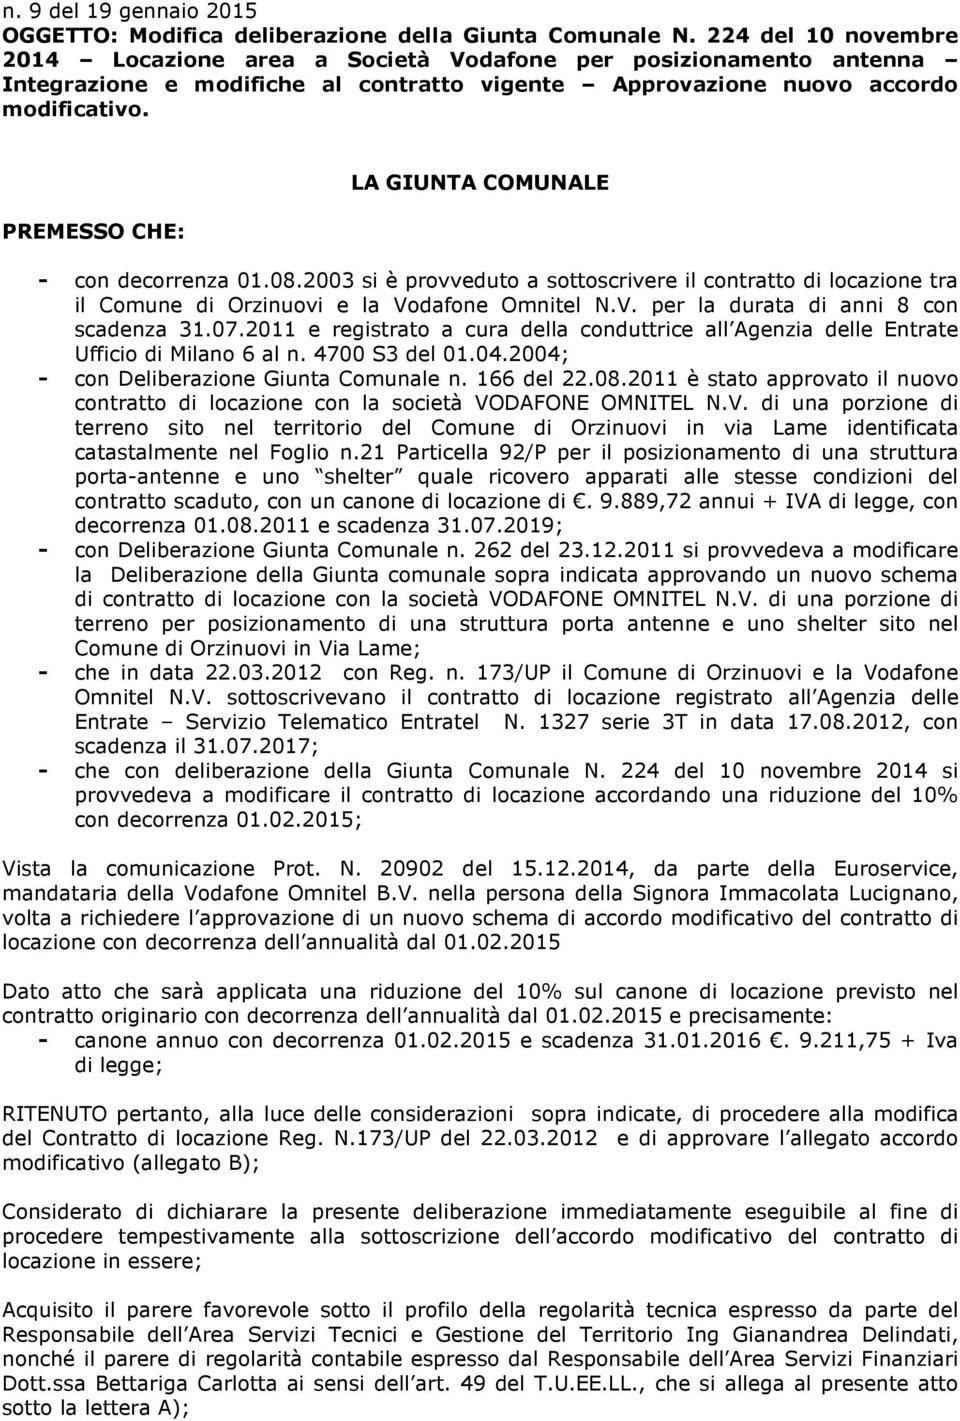 PREMESSO CHE: LA GIUNTA COMUNALE - con decorrenza 01.08.2003 si è provveduto a sottoscrivere il contratto di locazione tra il Comune di Orzinuovi e la Vodafone Omnitel N.V. per la durata di anni 8 con scadenza 31.